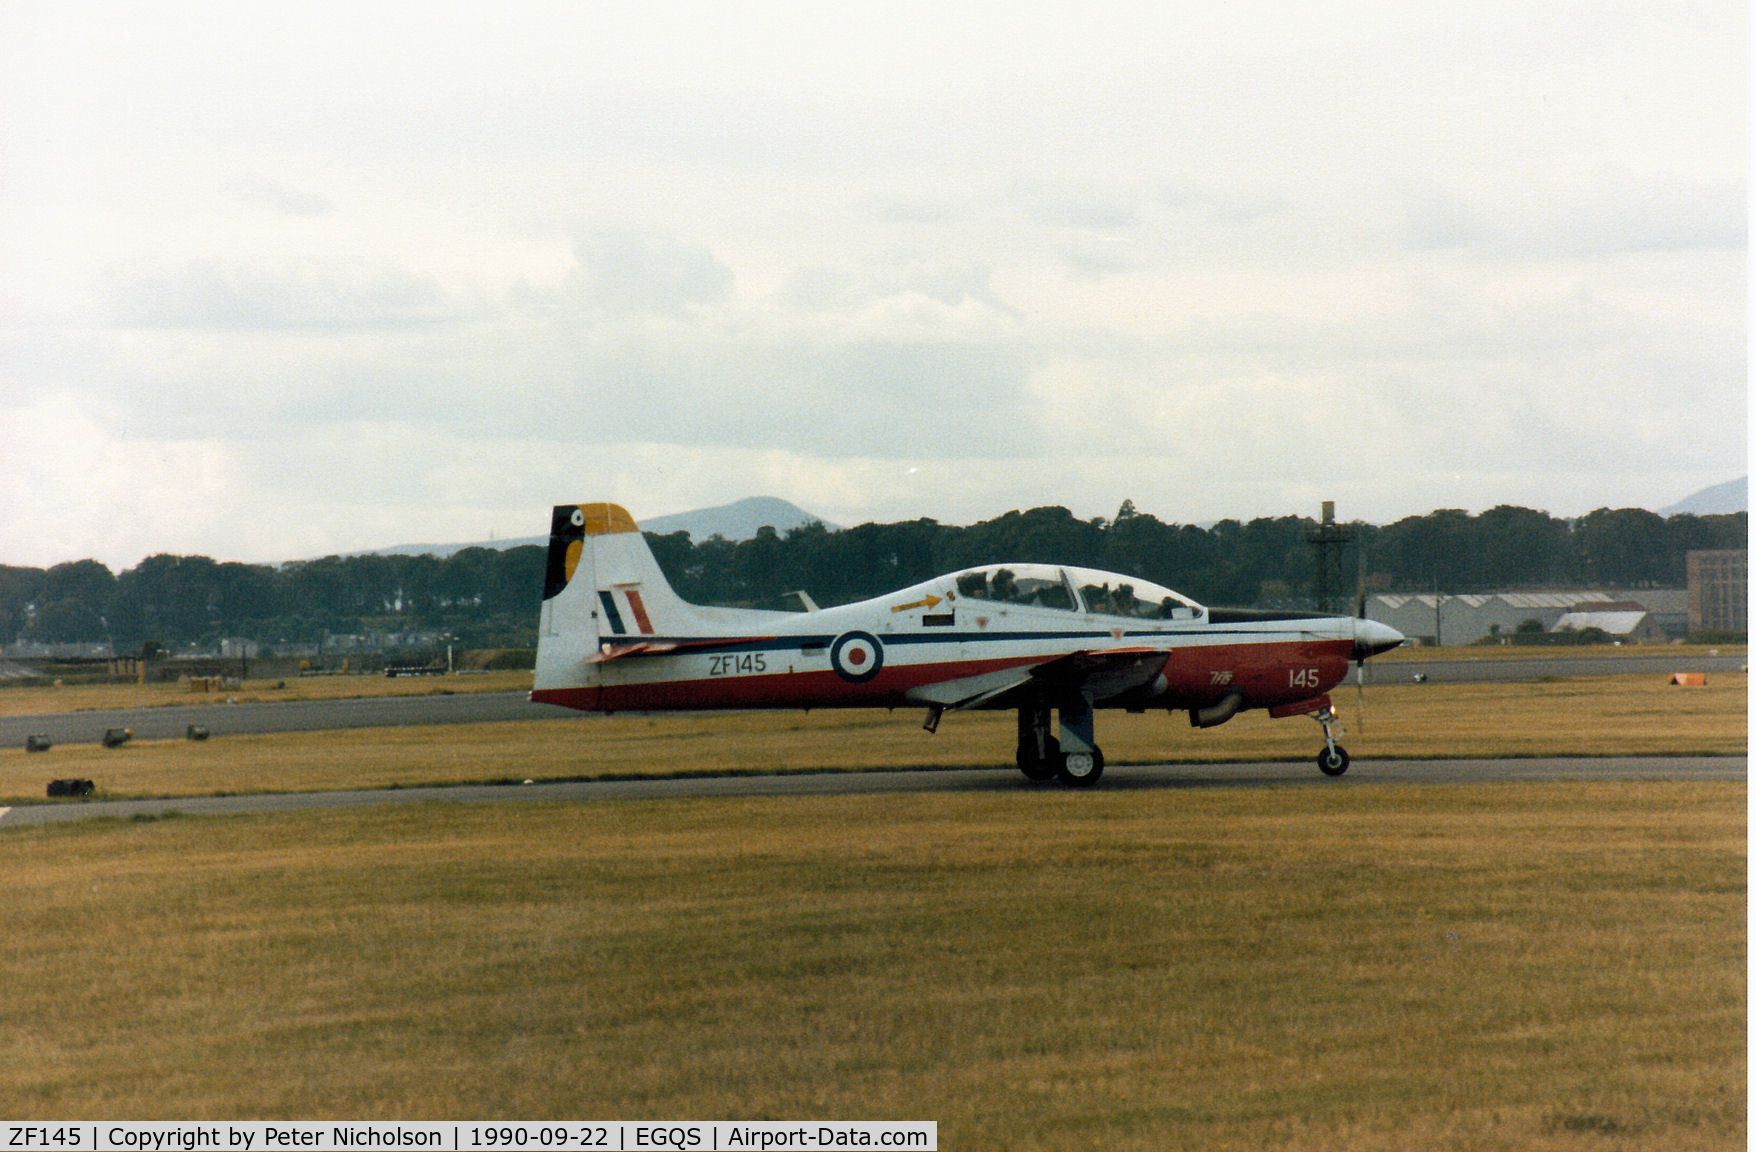 ZF145, 1988 Short S-312 Tucano T1 C/N S011/T11, Tucano T.1 of 7 Flying Training School at RAF Church Fenton on display at the 1990 RAF Leuchars Airshow.